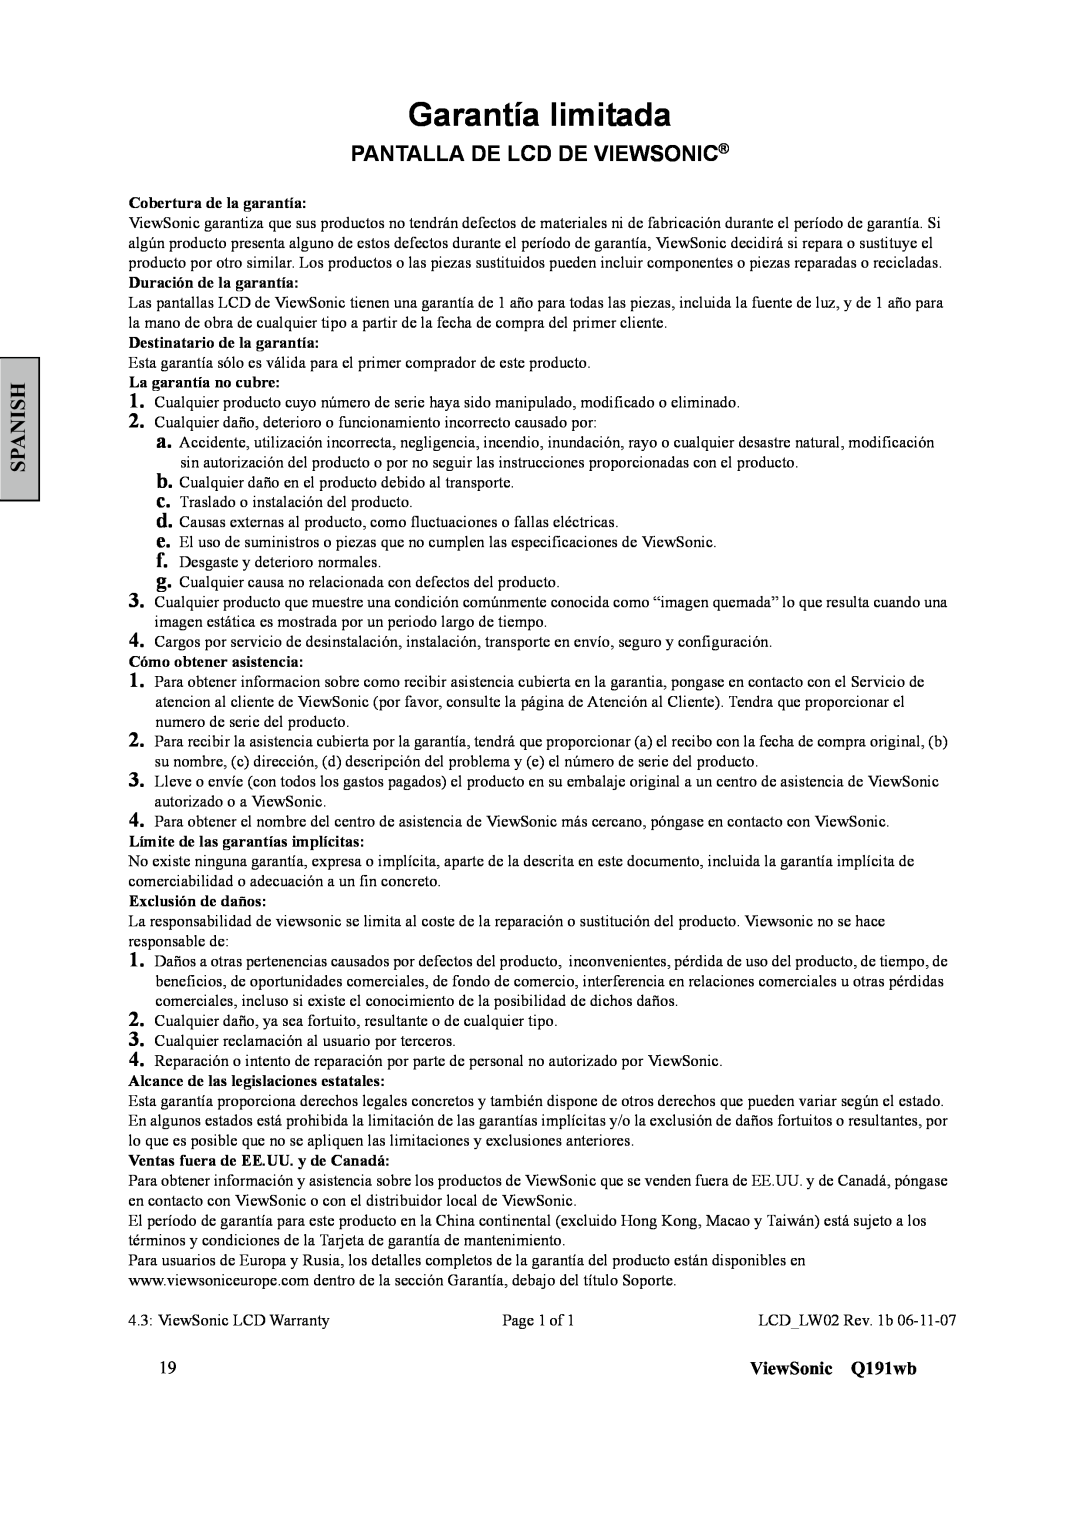 ViewSonic Q191WB manual Pantalla De Lcd De Viewsonic, Garantía limitada, Spanish, ViewSonic Q191wb 